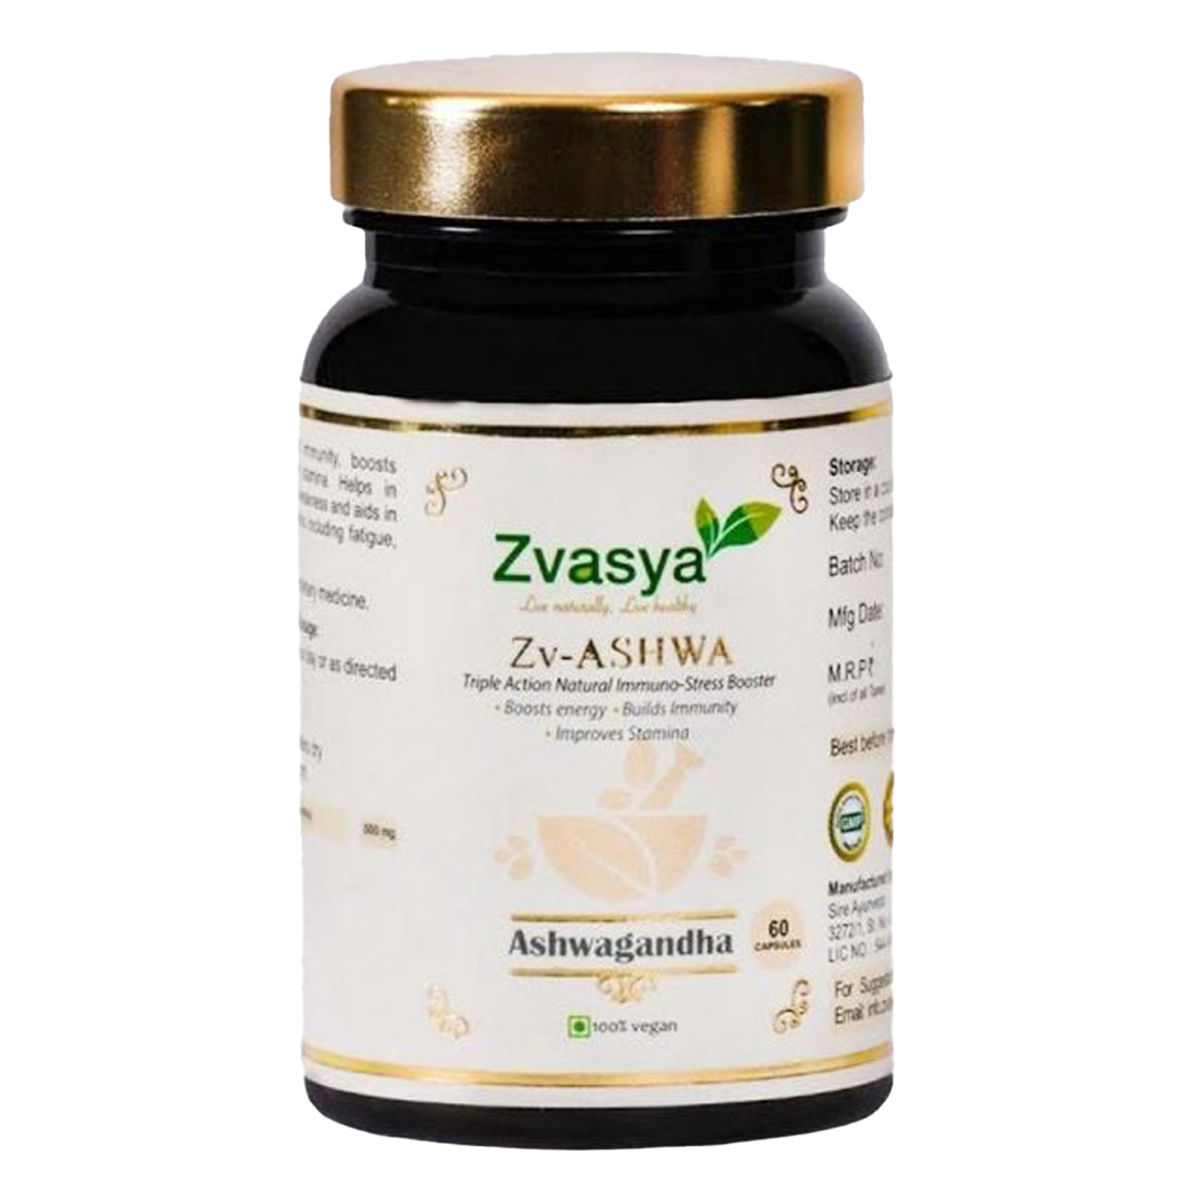 Buy Zvasya Zv-Ashwa Ashwagandha, 60 Capsules Online